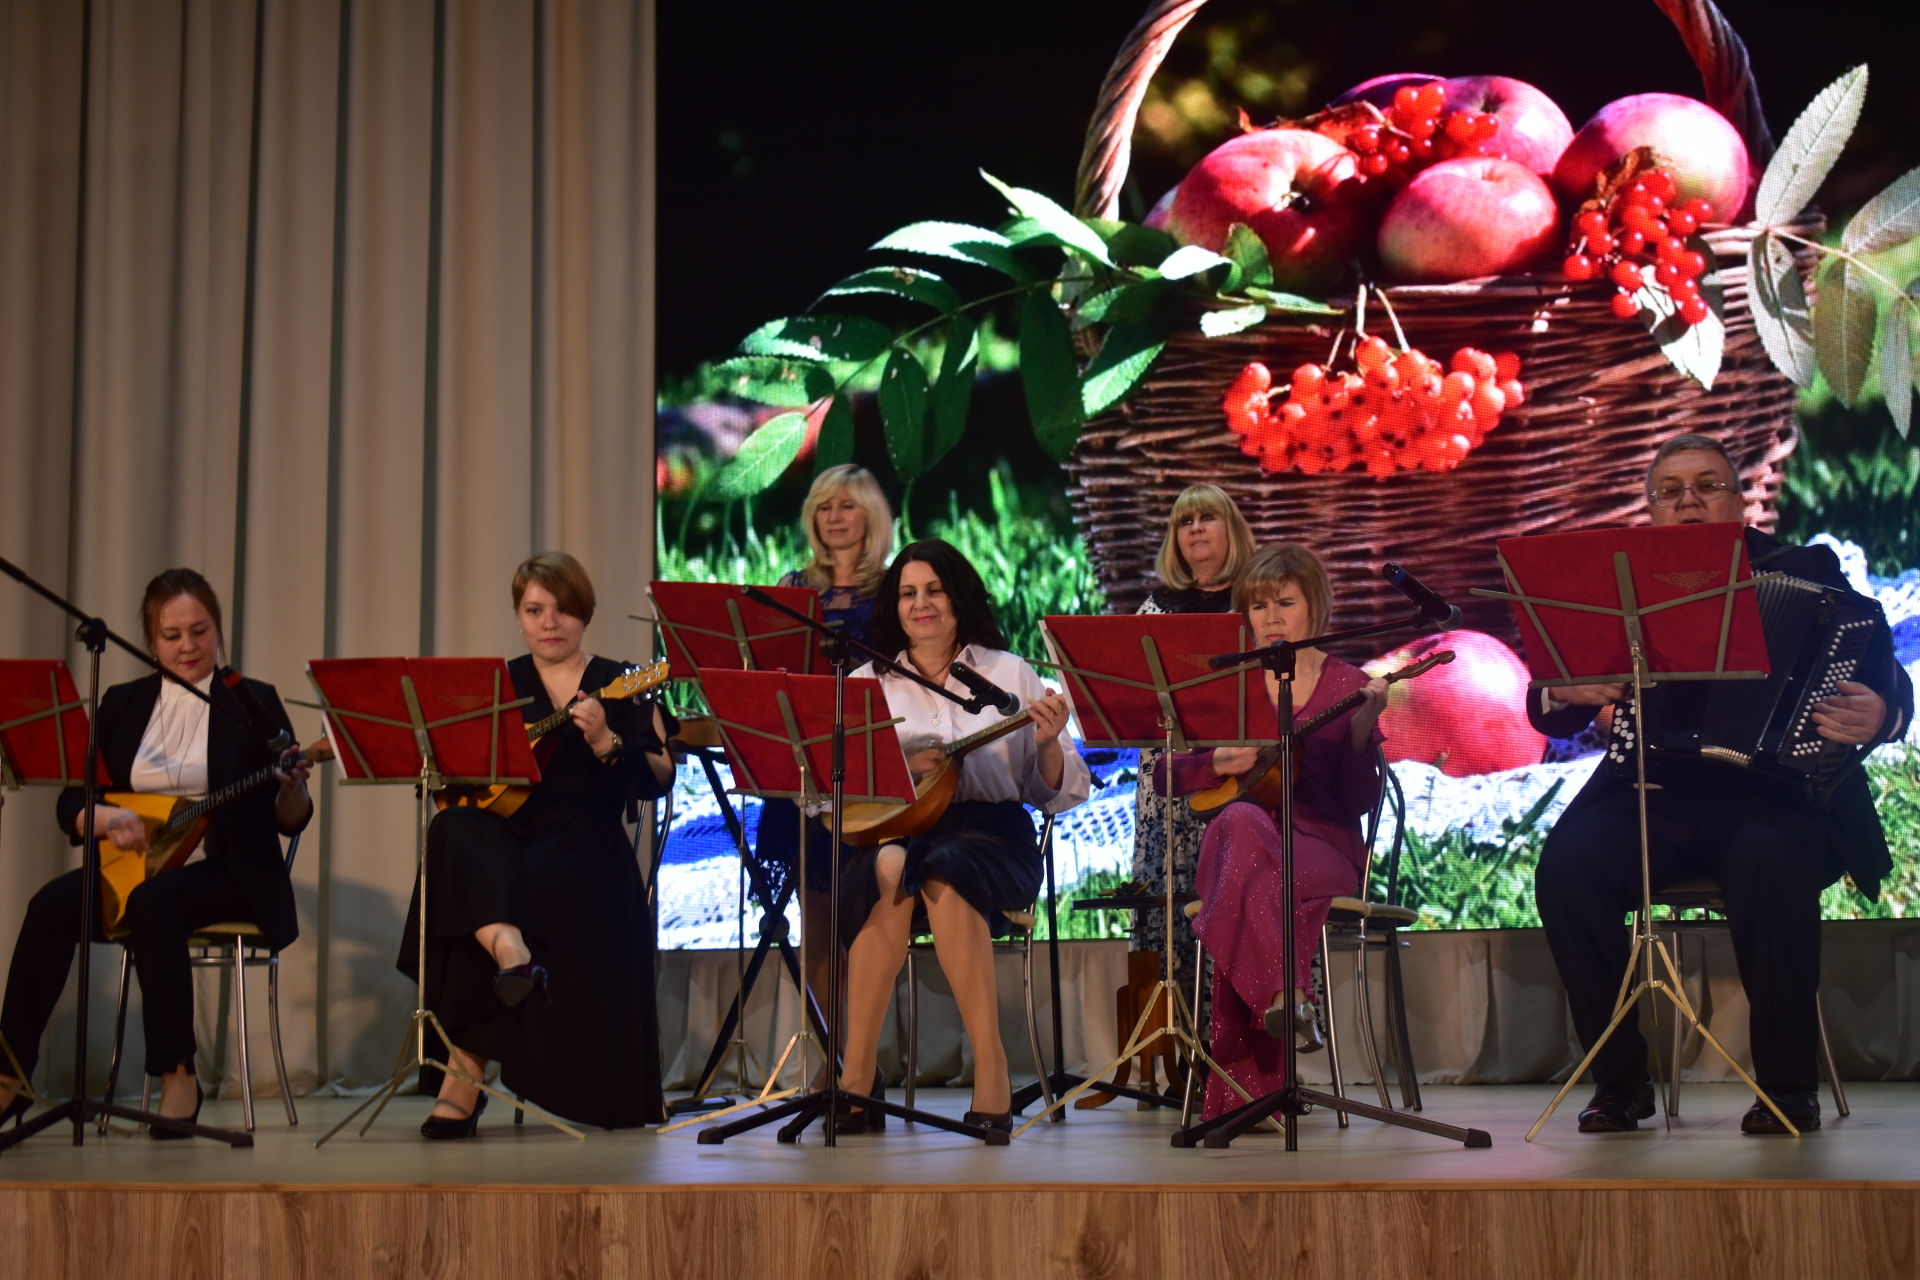 В Камских Полянах прошел отчетный концерт детской музыкальной школы